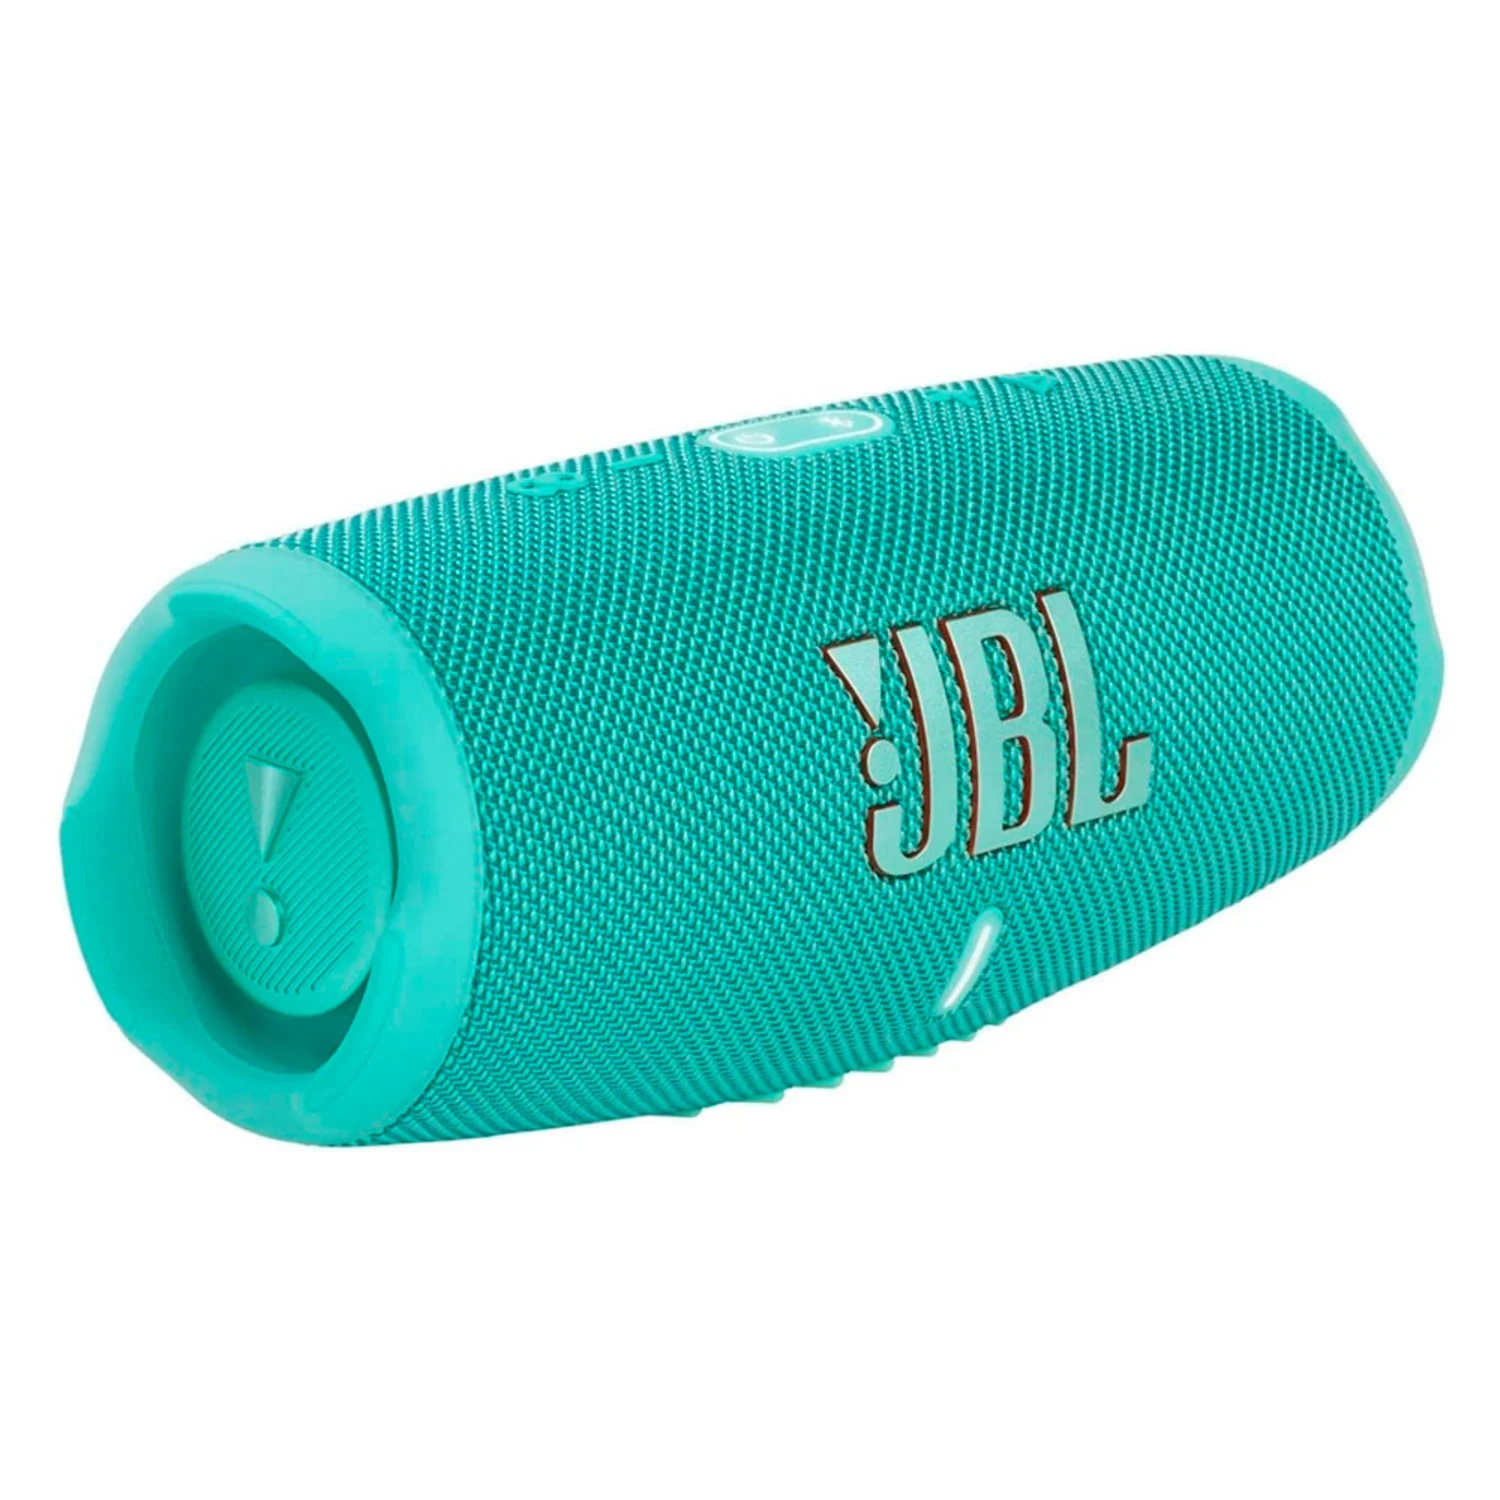 Caixa de Som JBL Charge 5 - Teal